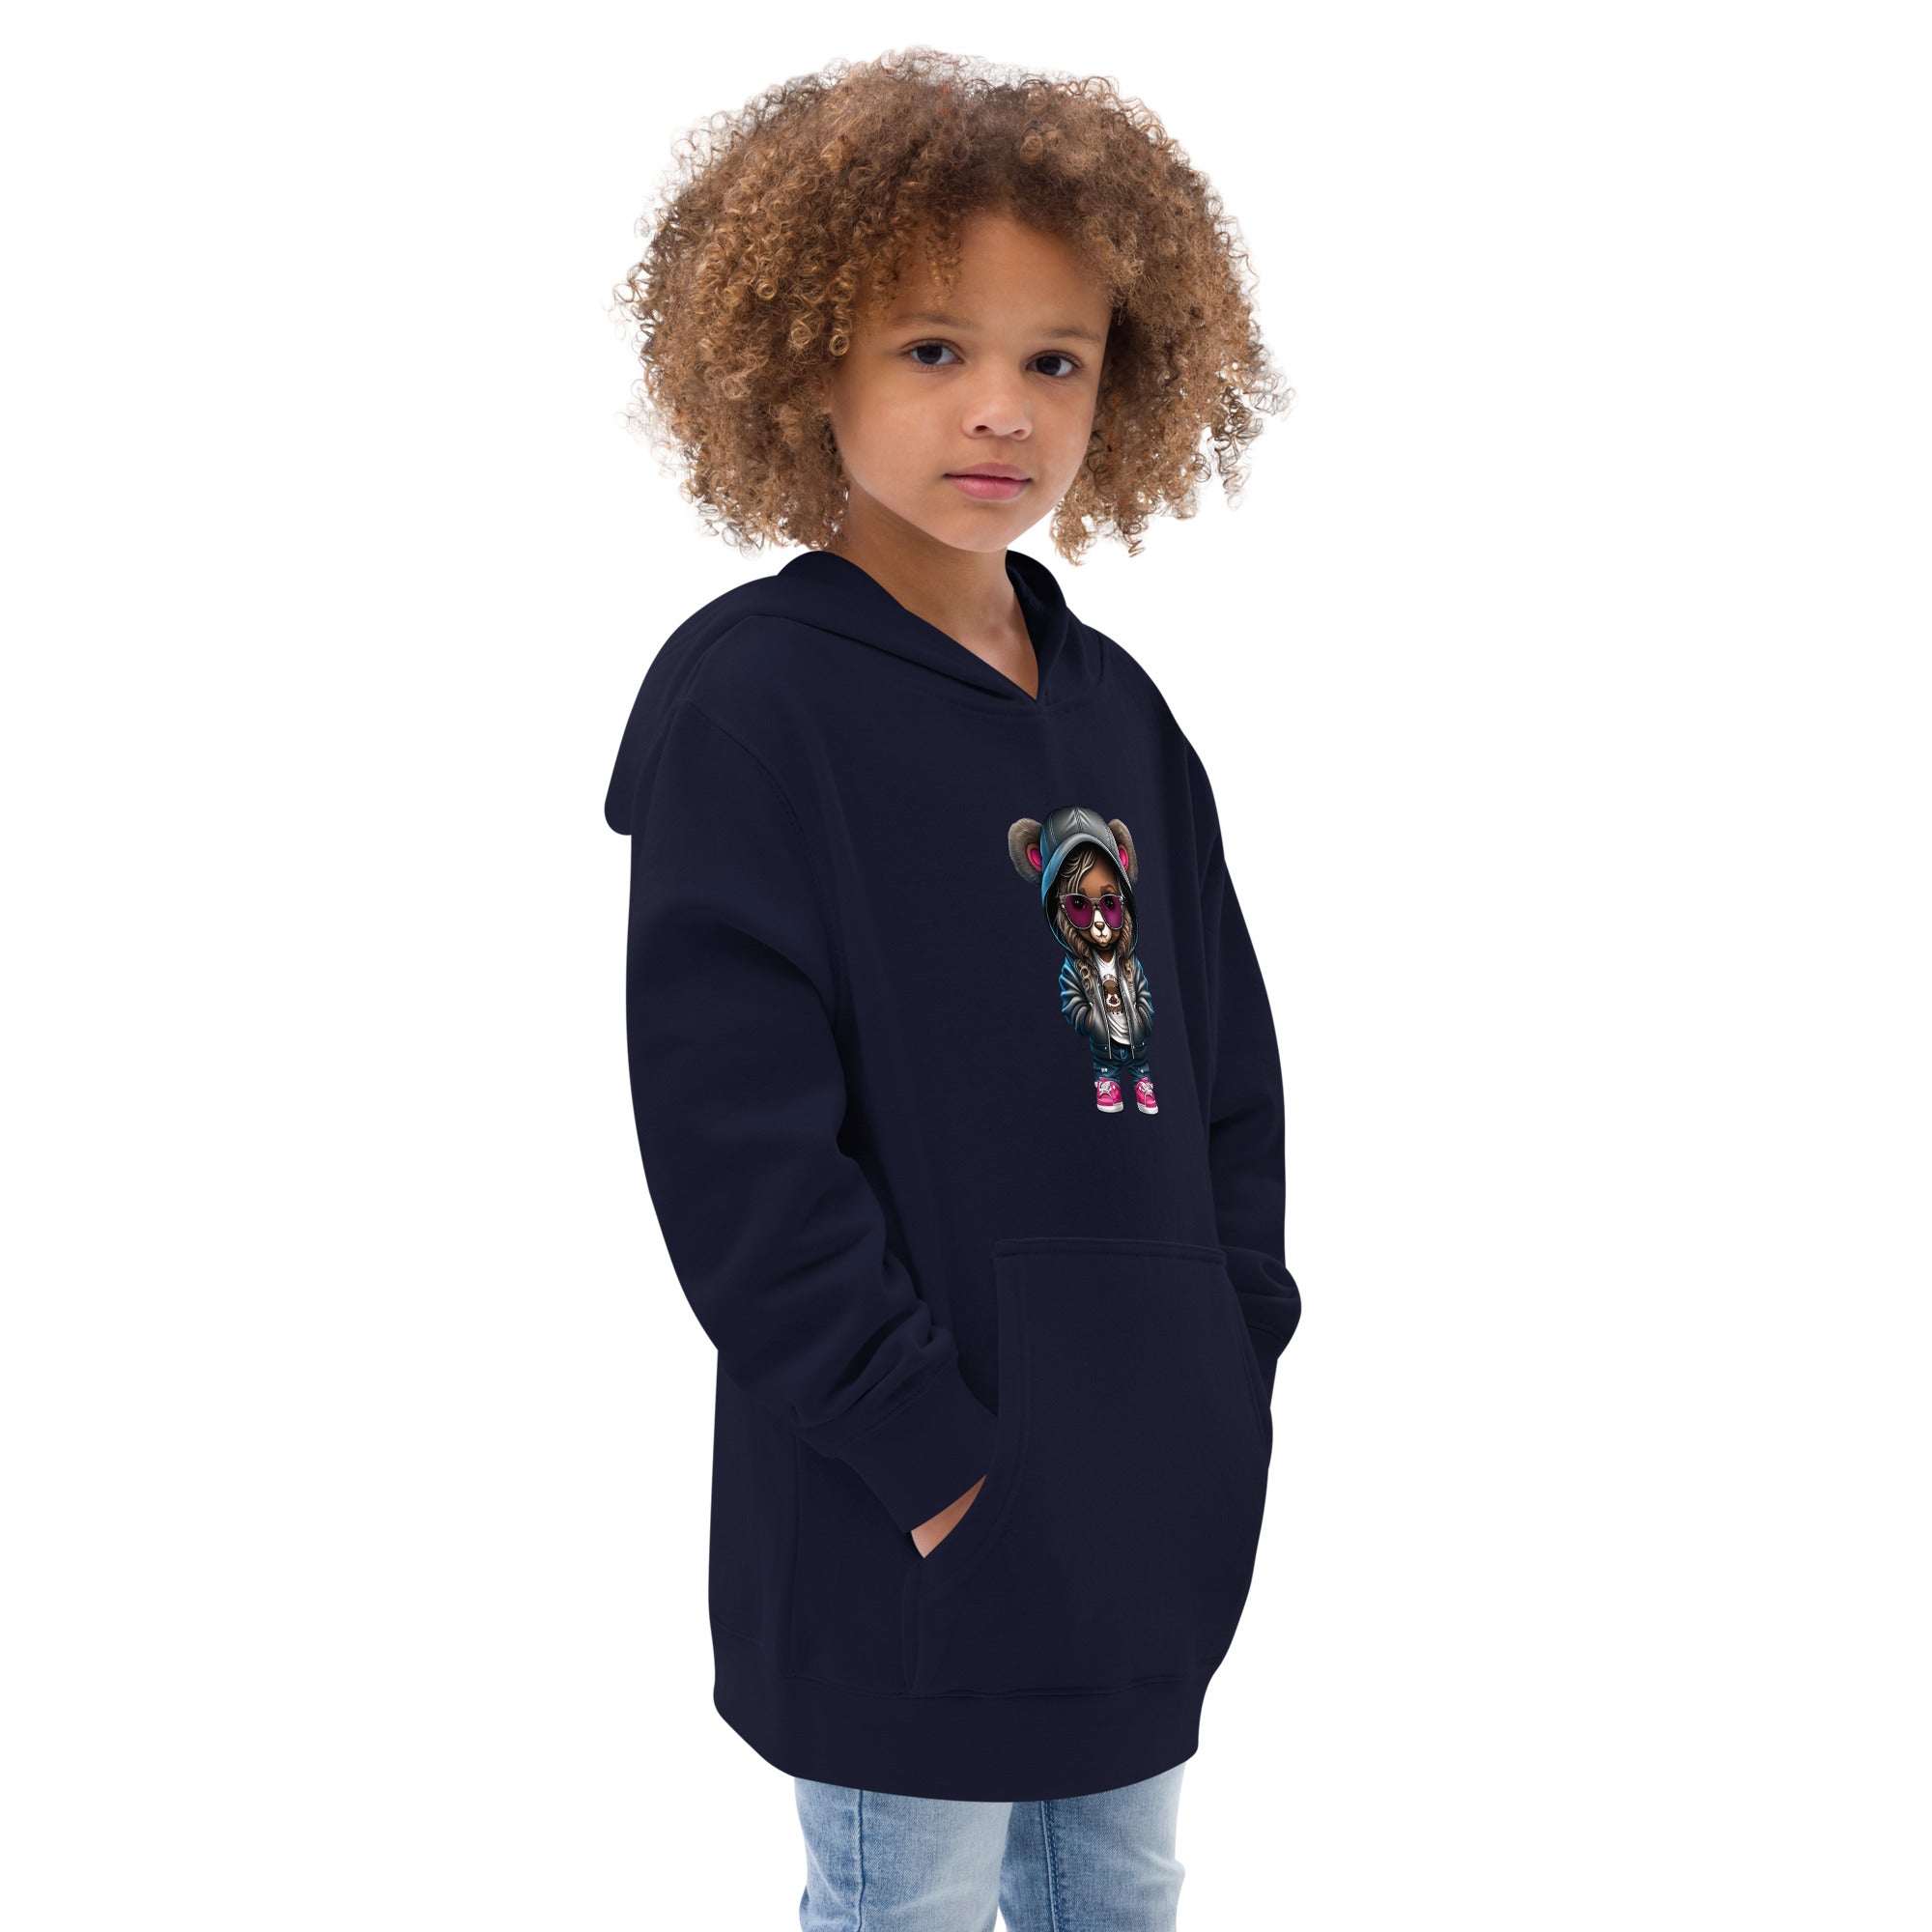 Kids Graphic Design fleece hoodie